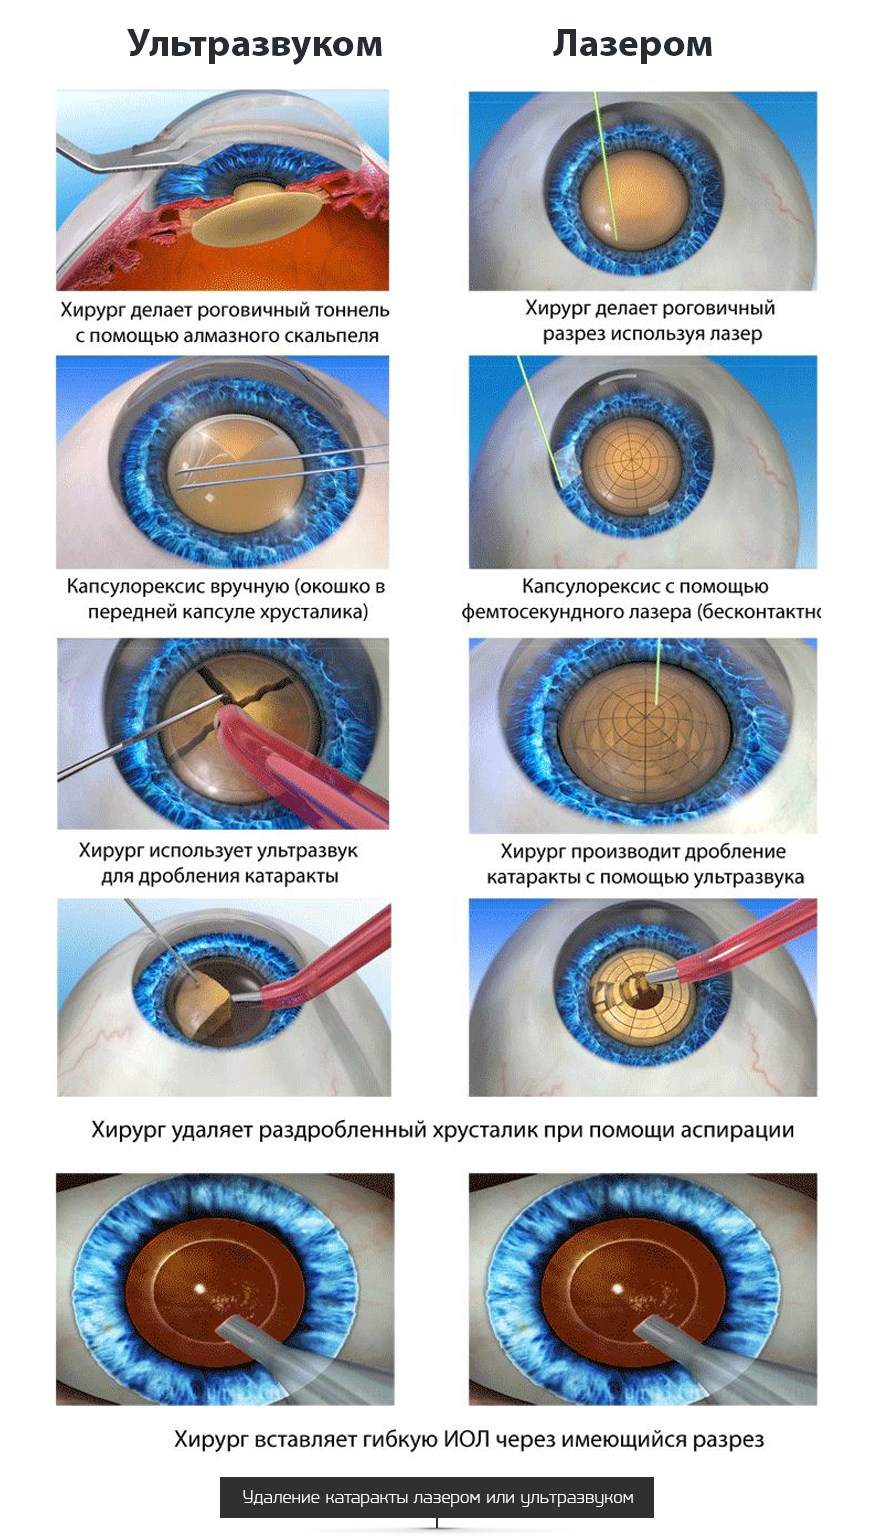 Факоэмульсификация катаракты этапы операции. Ультразвуковая факоэмульсификация катаракты этапы. Ультразвуковое хирургия катаракты - факоэмульсификация. Техника факоэмульсификации катаракты с имплантацией ИОЛ.